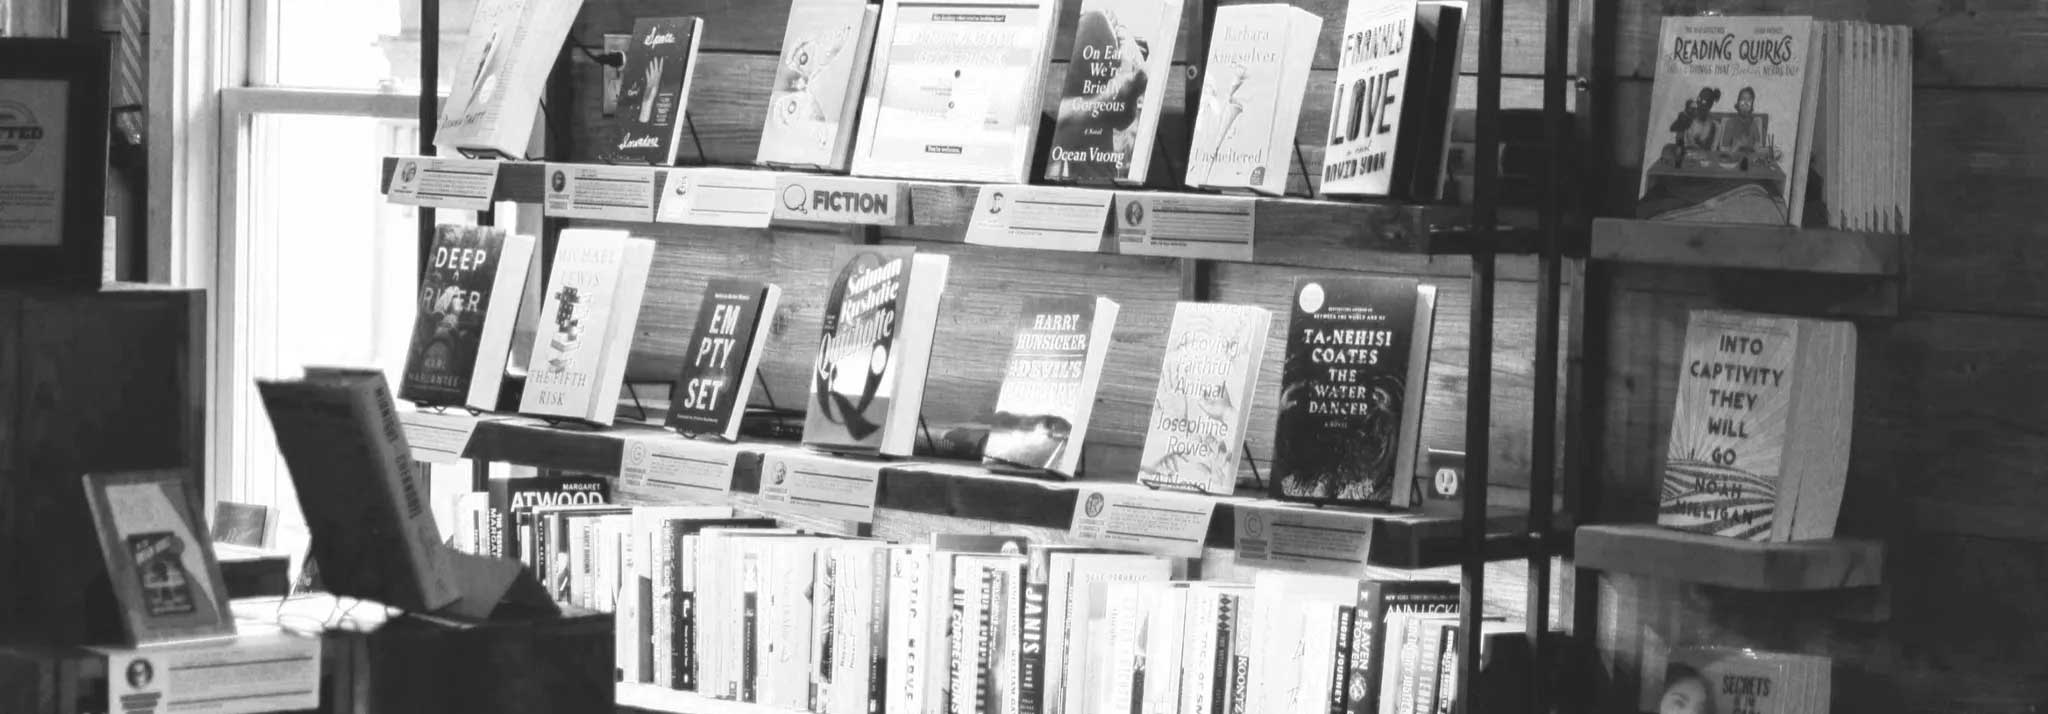 Il posto in rete per i Bookstore, nasce “Anobii per le librerie”